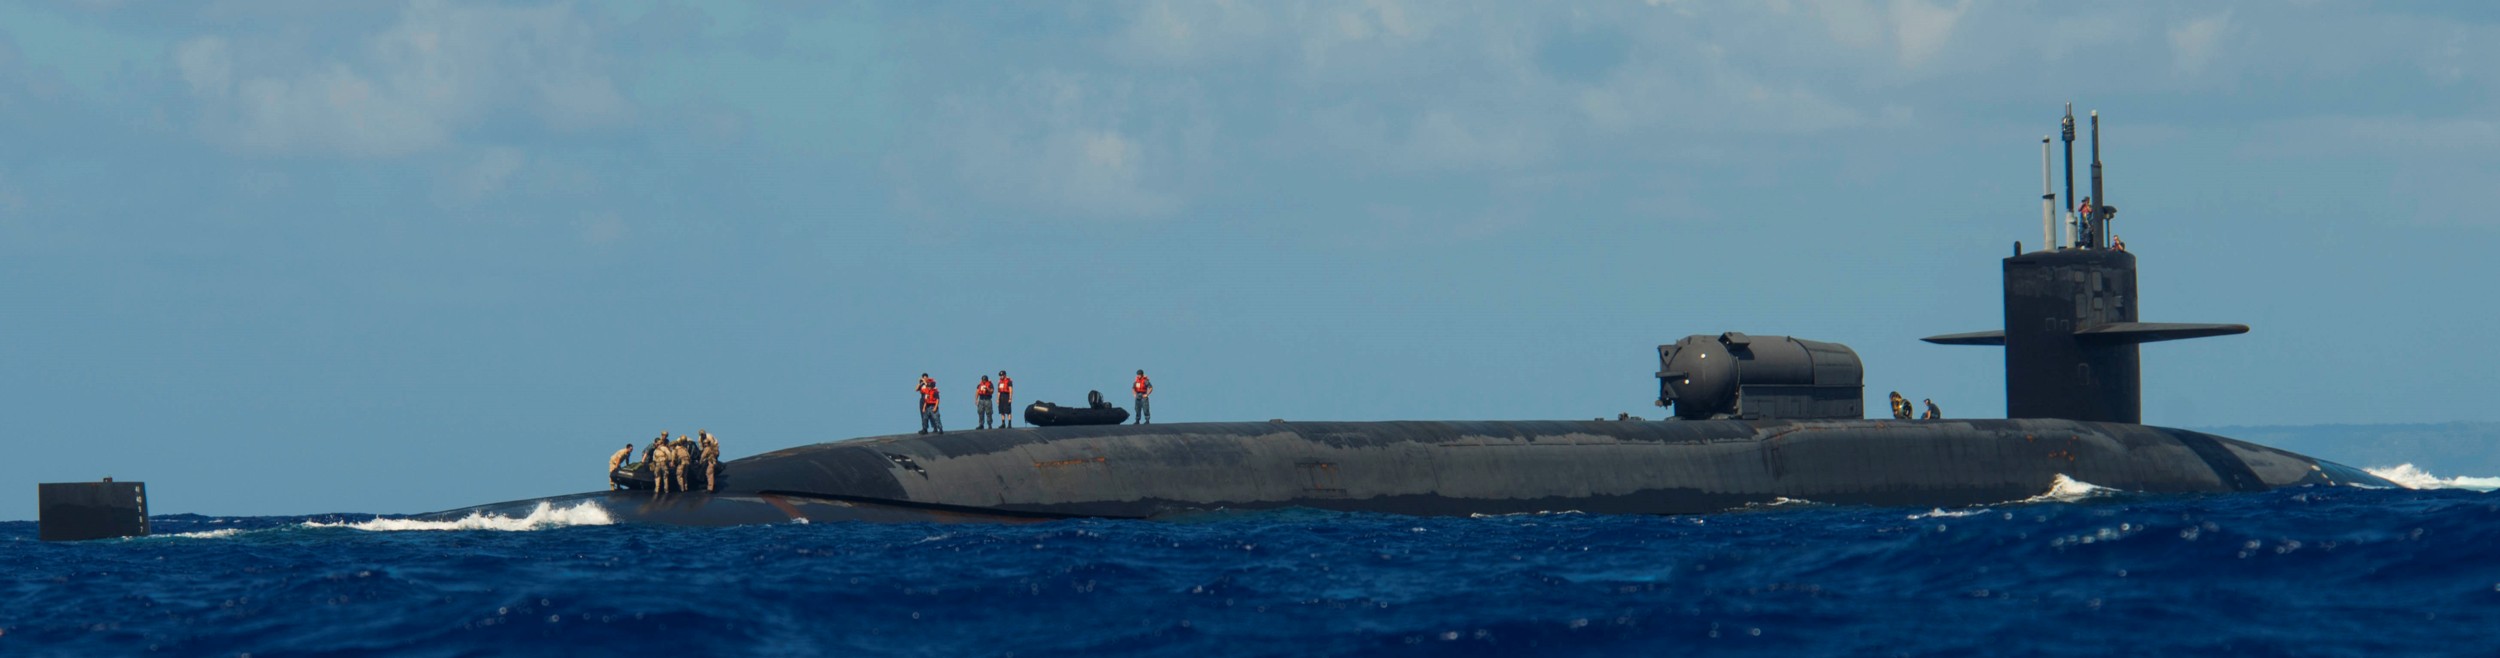 ssgn-727 uss michigan guided missile submarine 2015 10 apra harbor guam